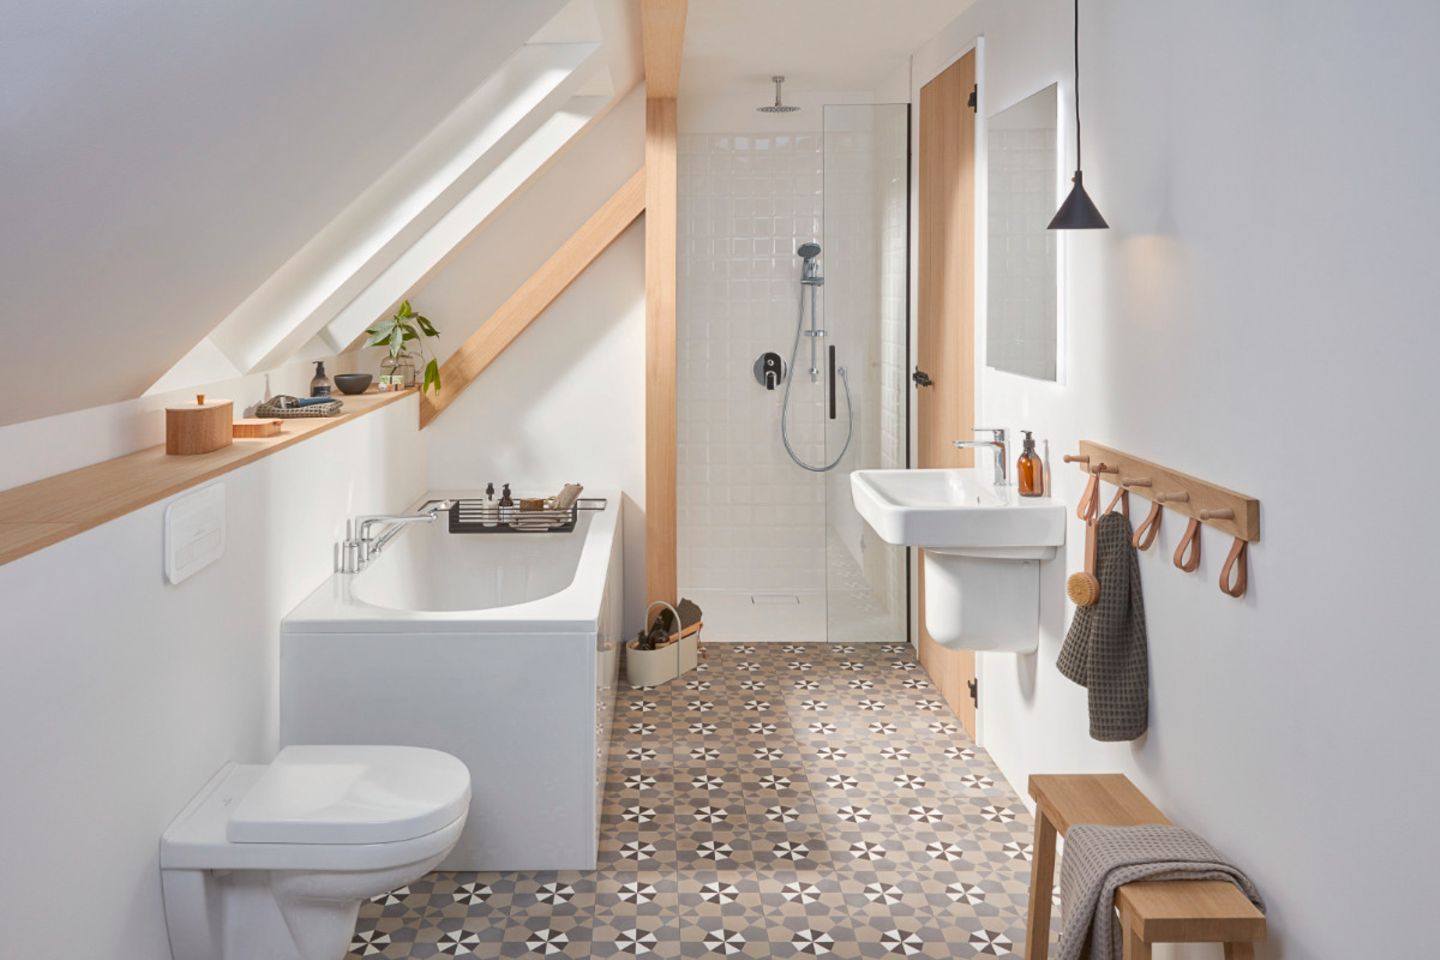 Kleines Bad in Weiß mit schönen Musterfliesen, hellem Holz und einer Badewanne unter der Dachschräge